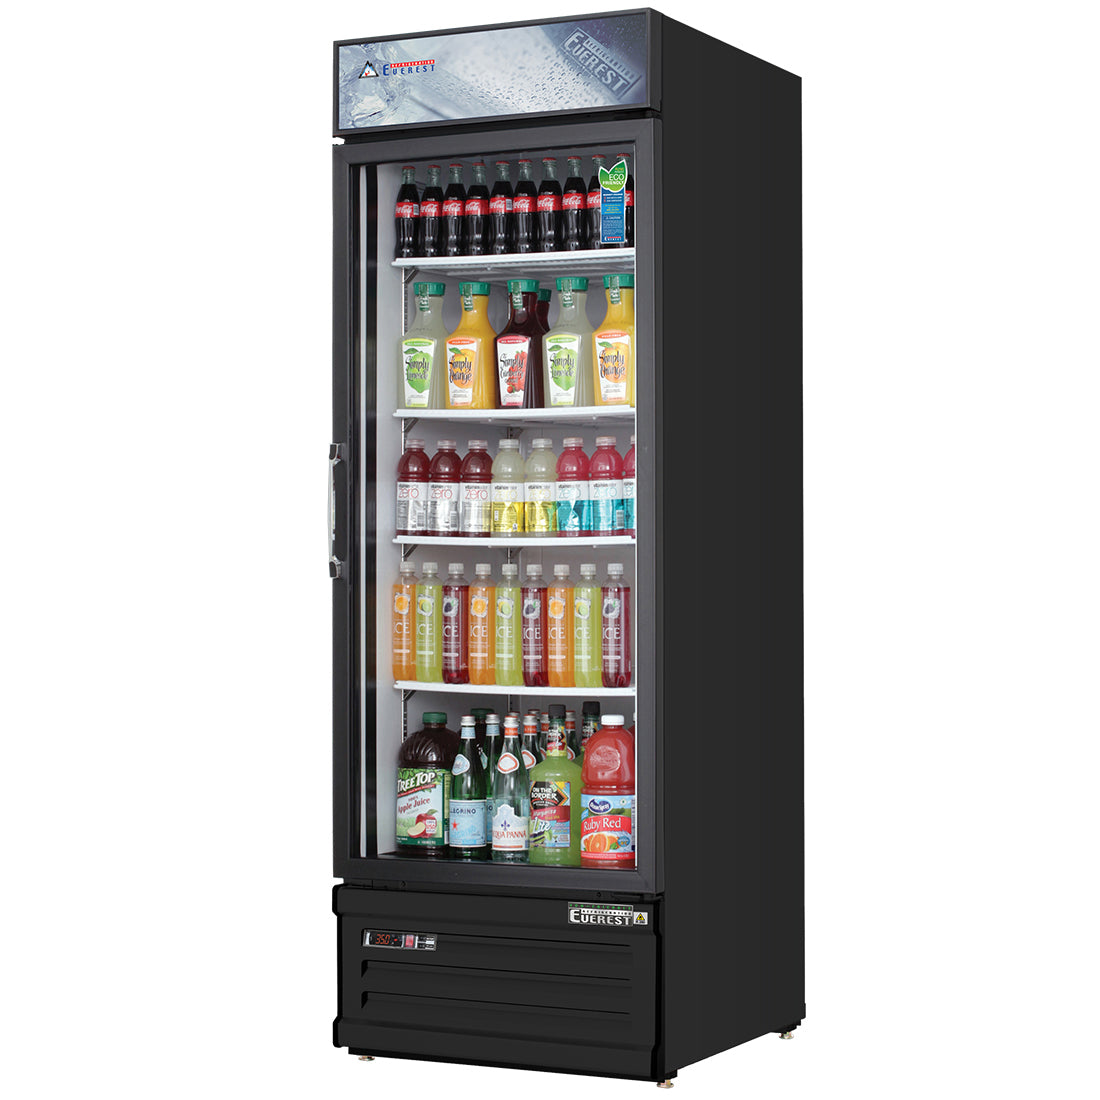 Everest 1 Door Refrigerator Merchandiser, 10 cu ft - Black Exterior Model EMGR10B